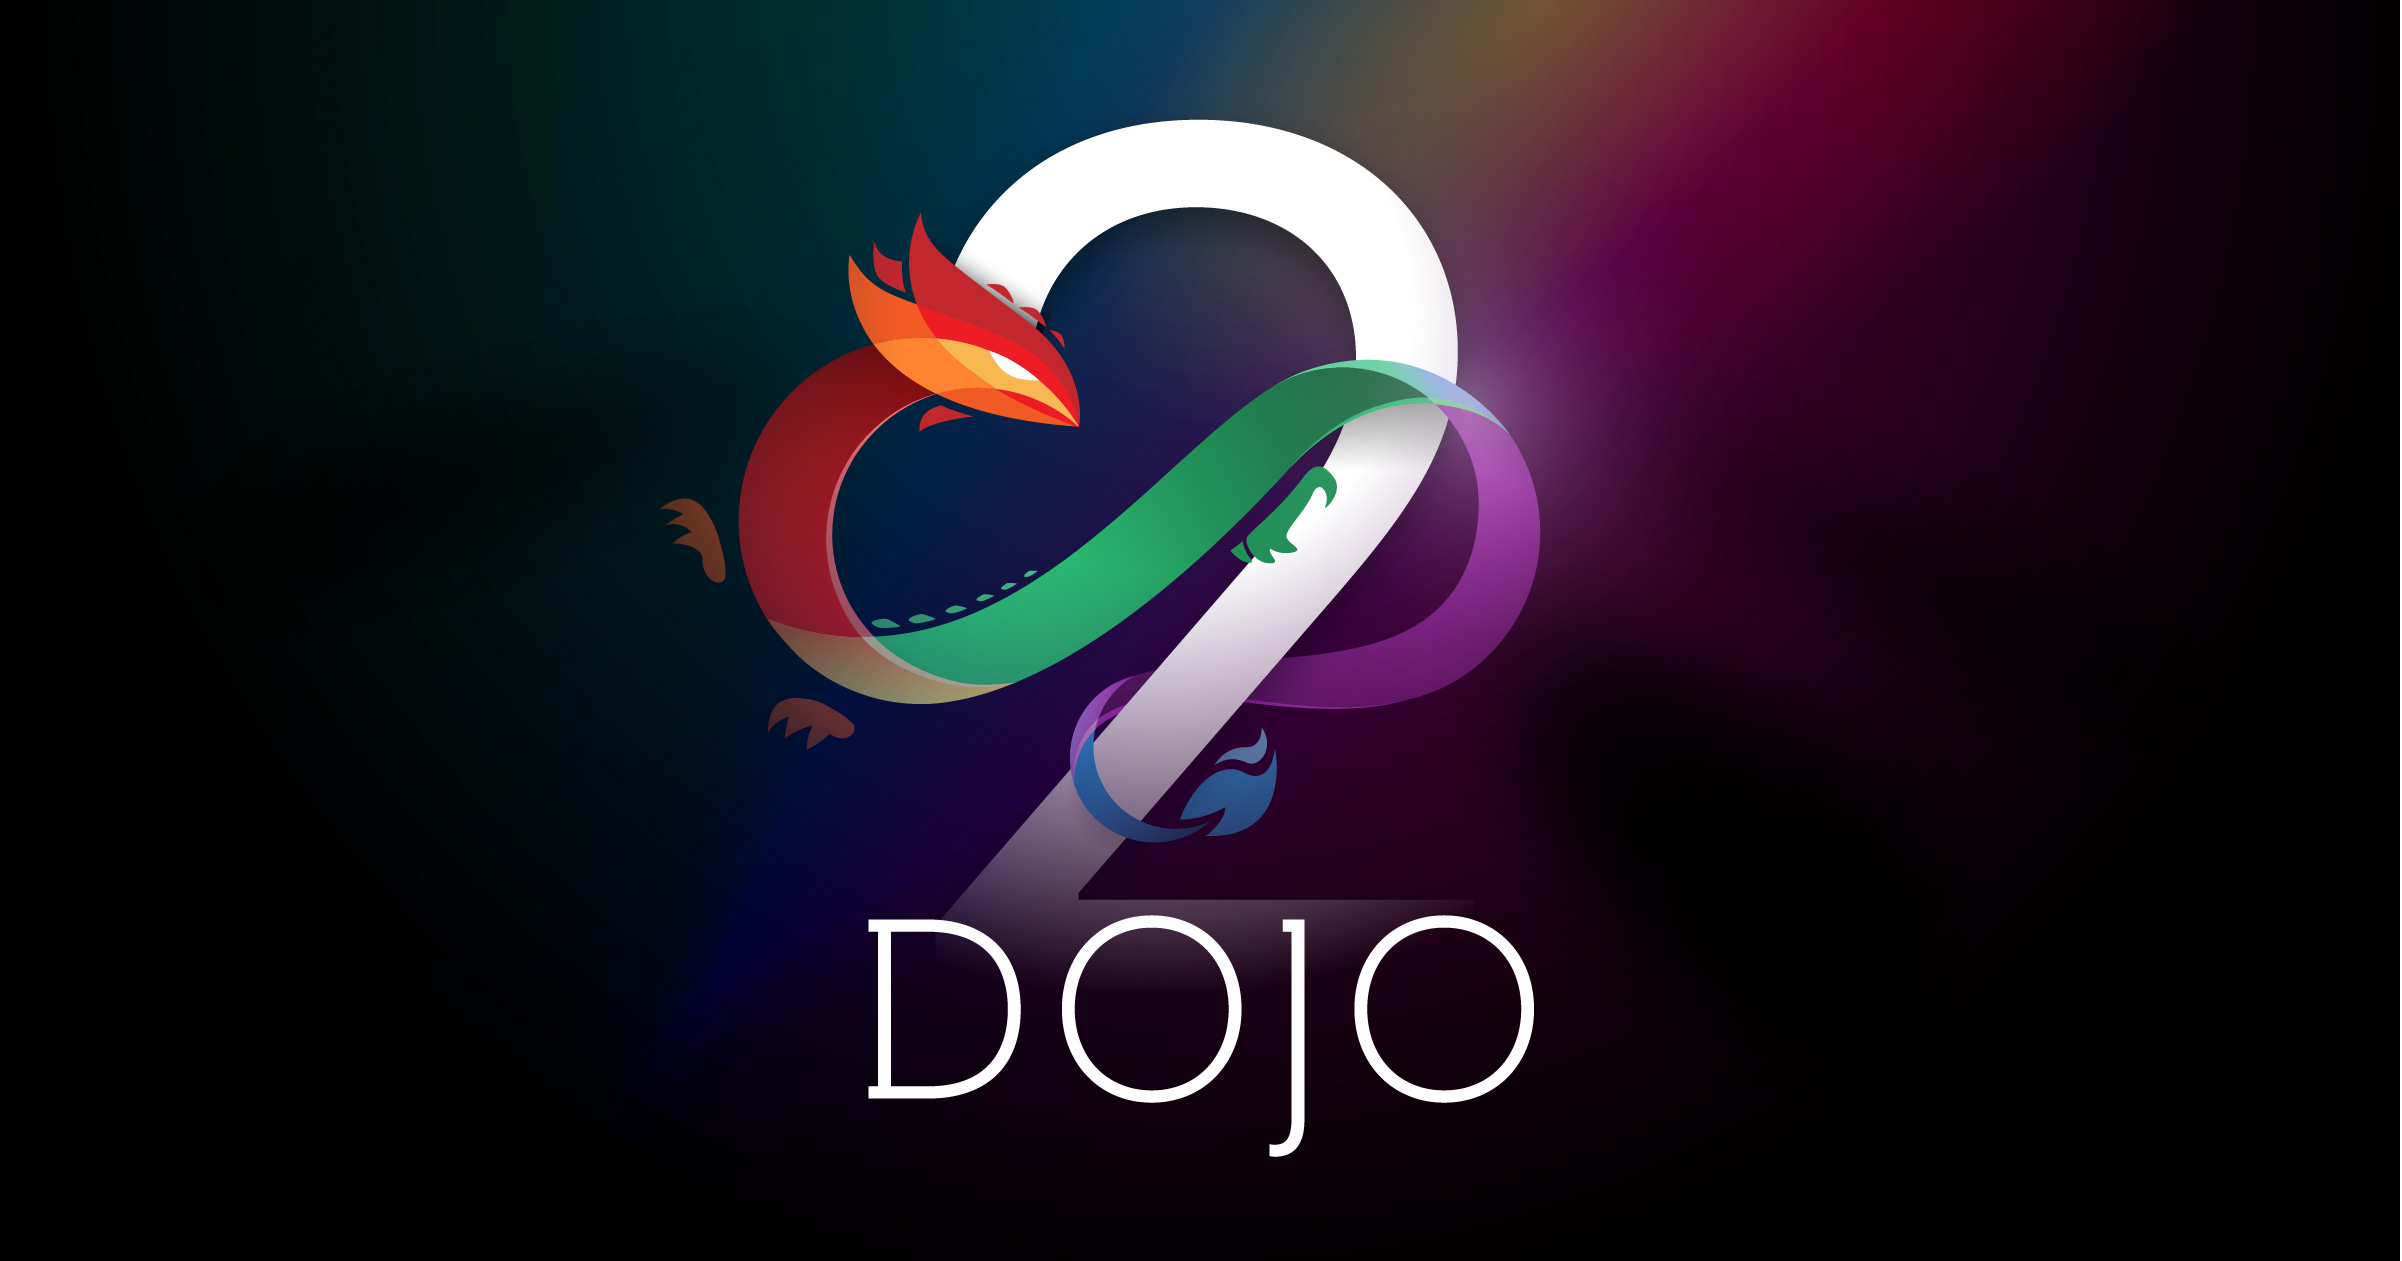 Dojo 2.0 is released